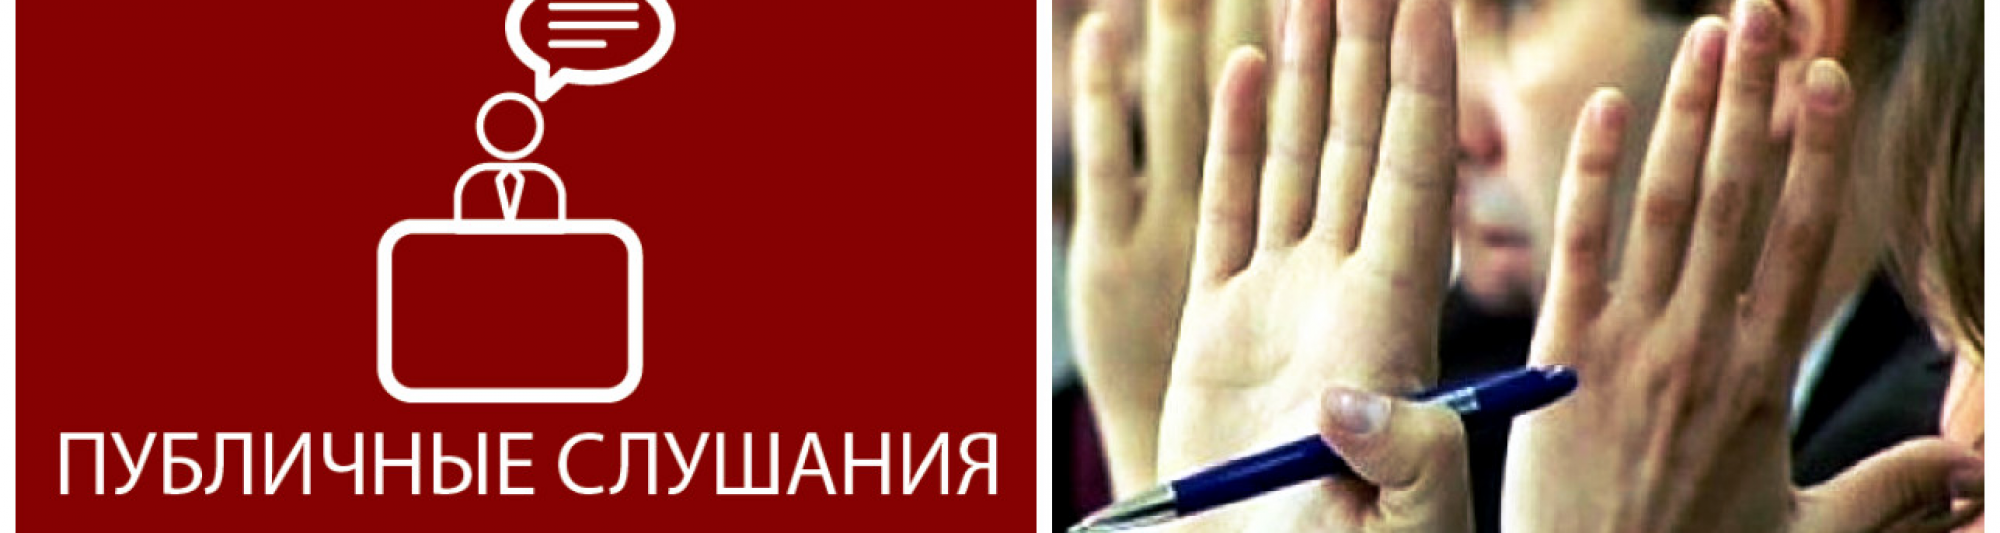 Публичные слушания по внесению изменений в Устав города Томска